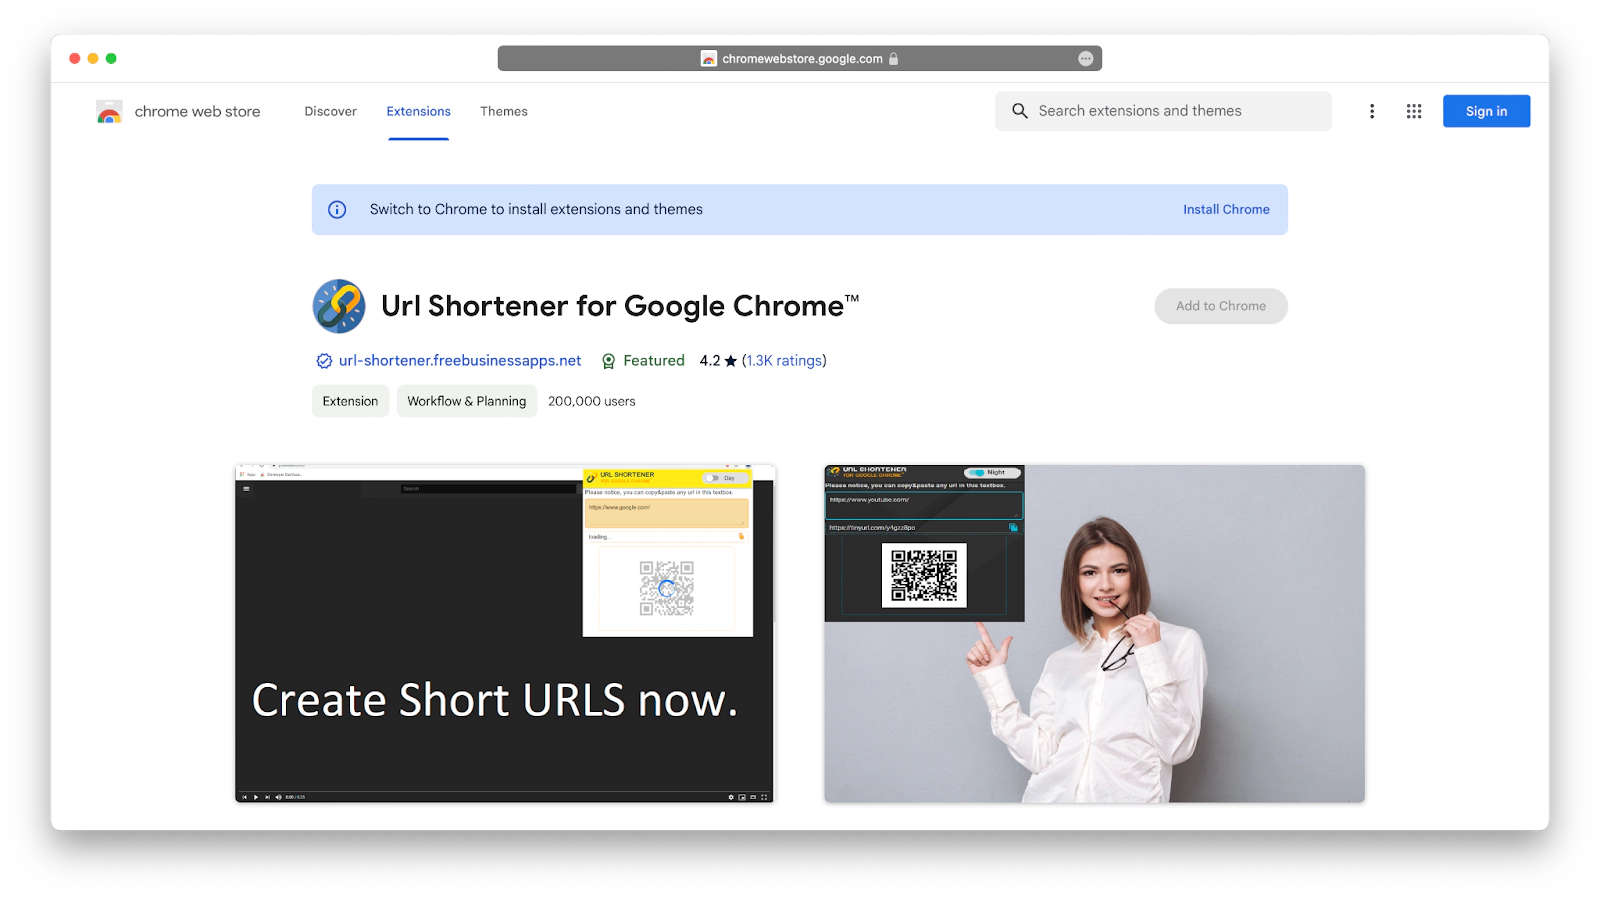 URL Shortener extension for Google Chrome